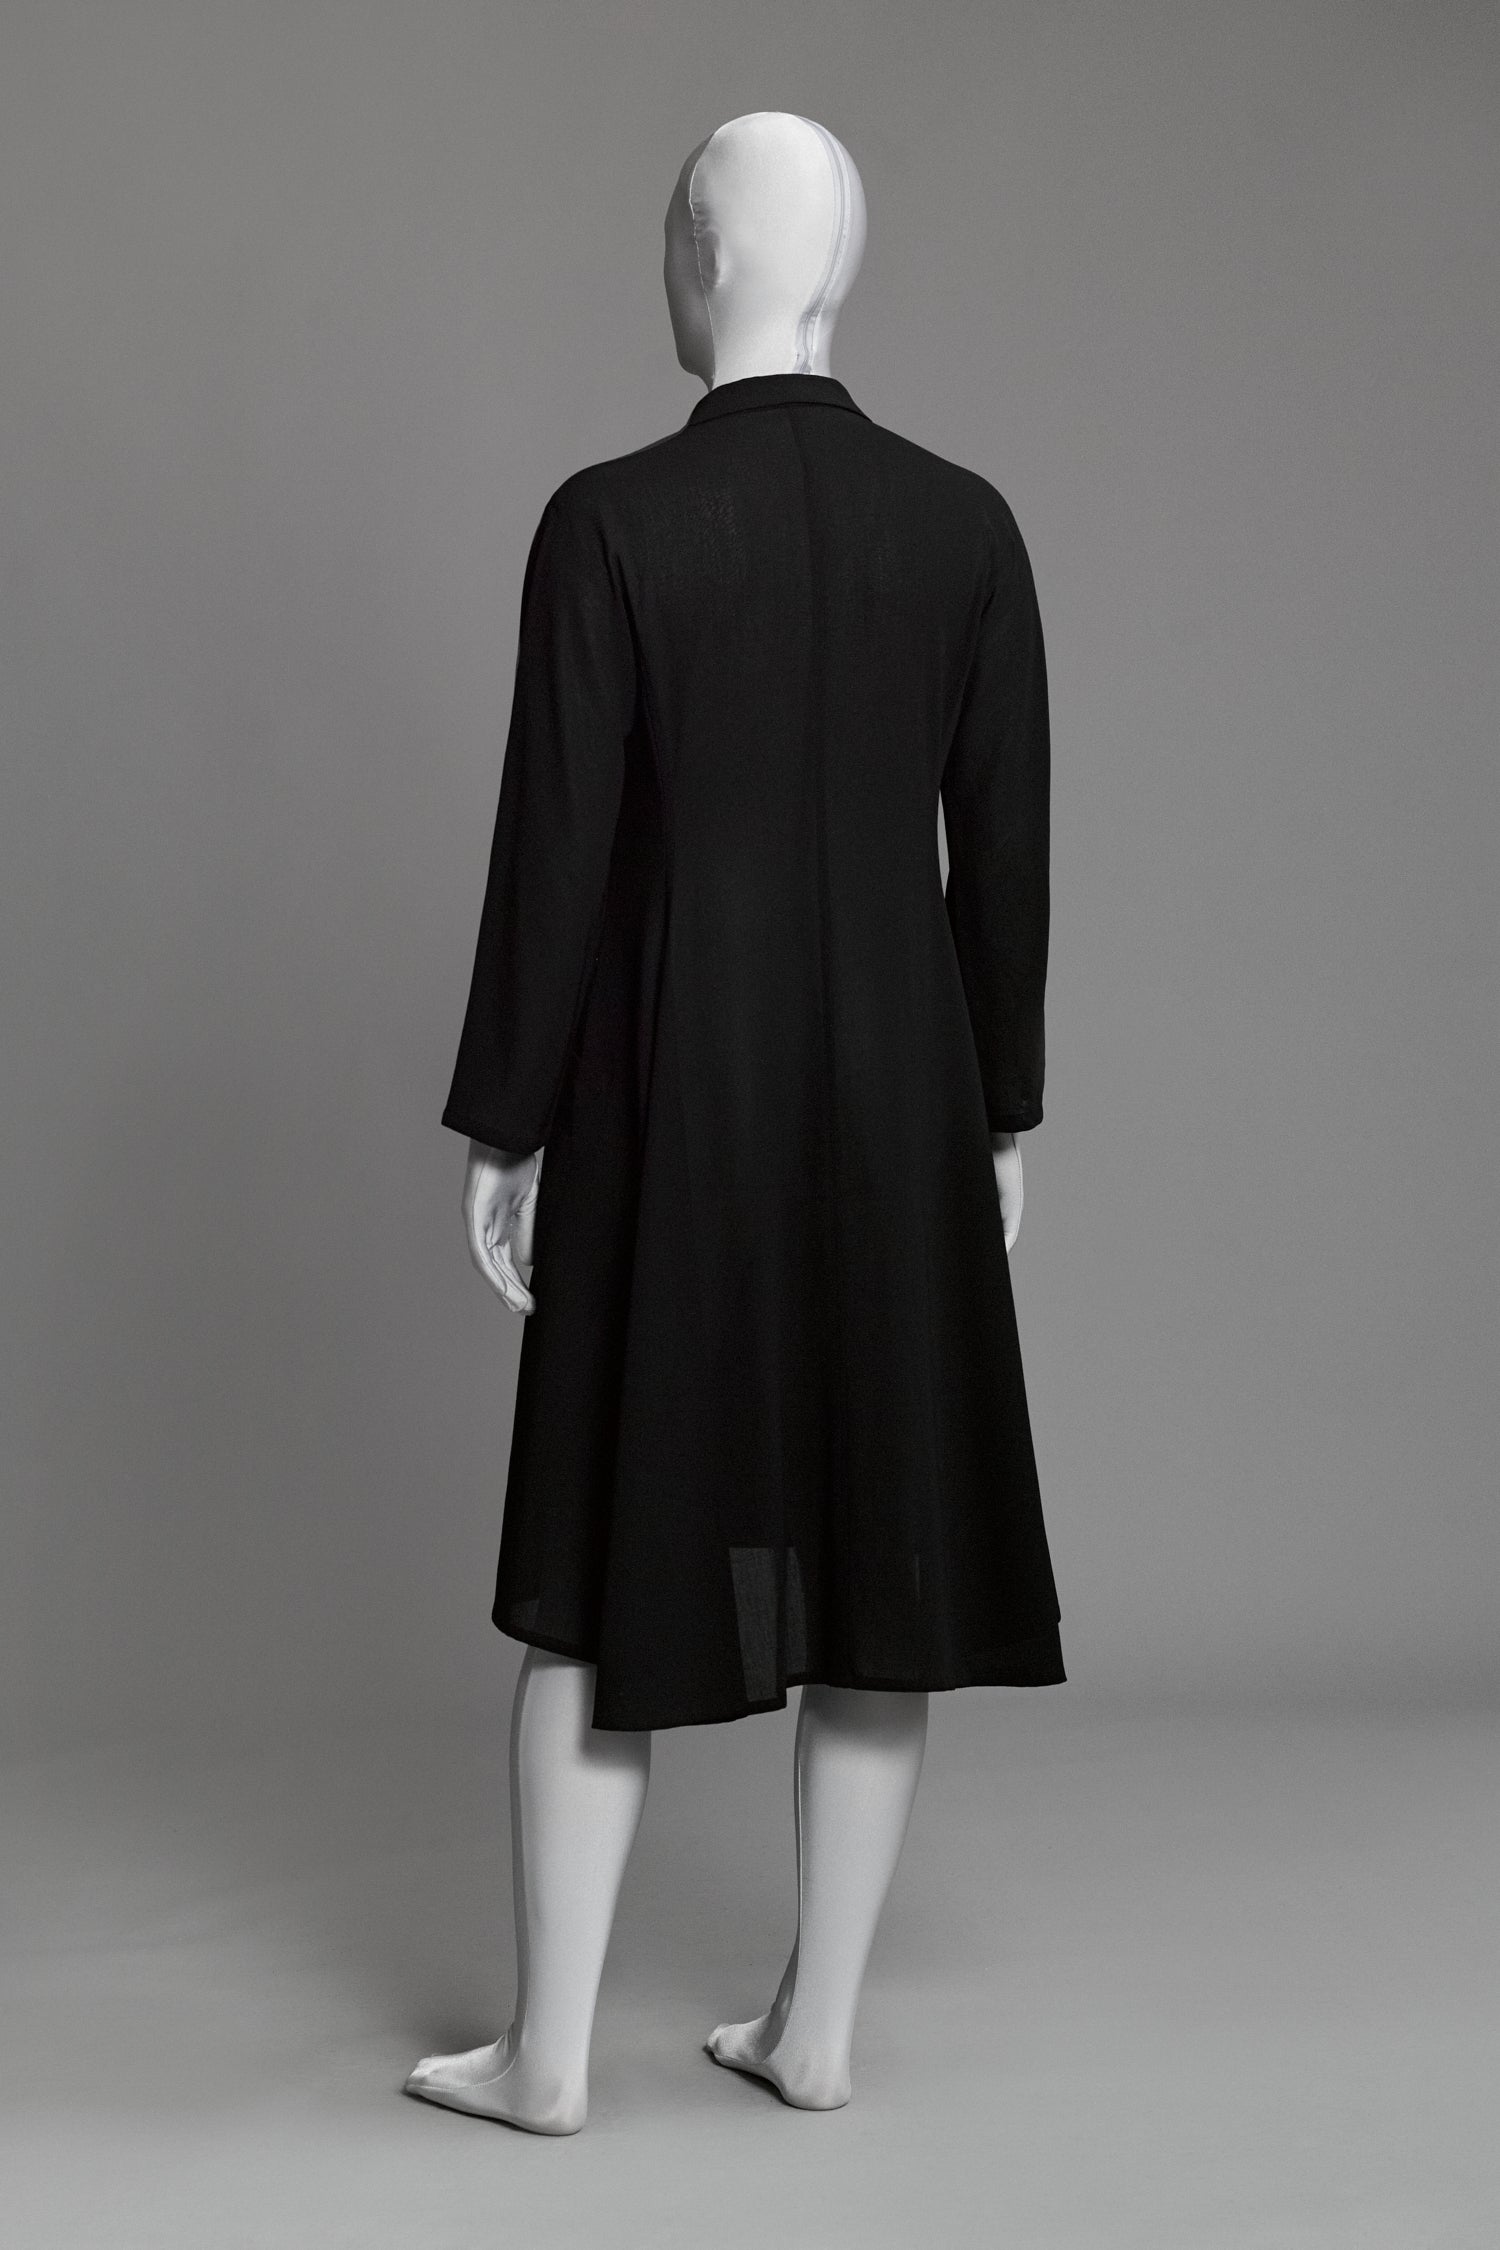 YOHJI YAMAMOTO Sheer Coat C.1980 - Aro Archive